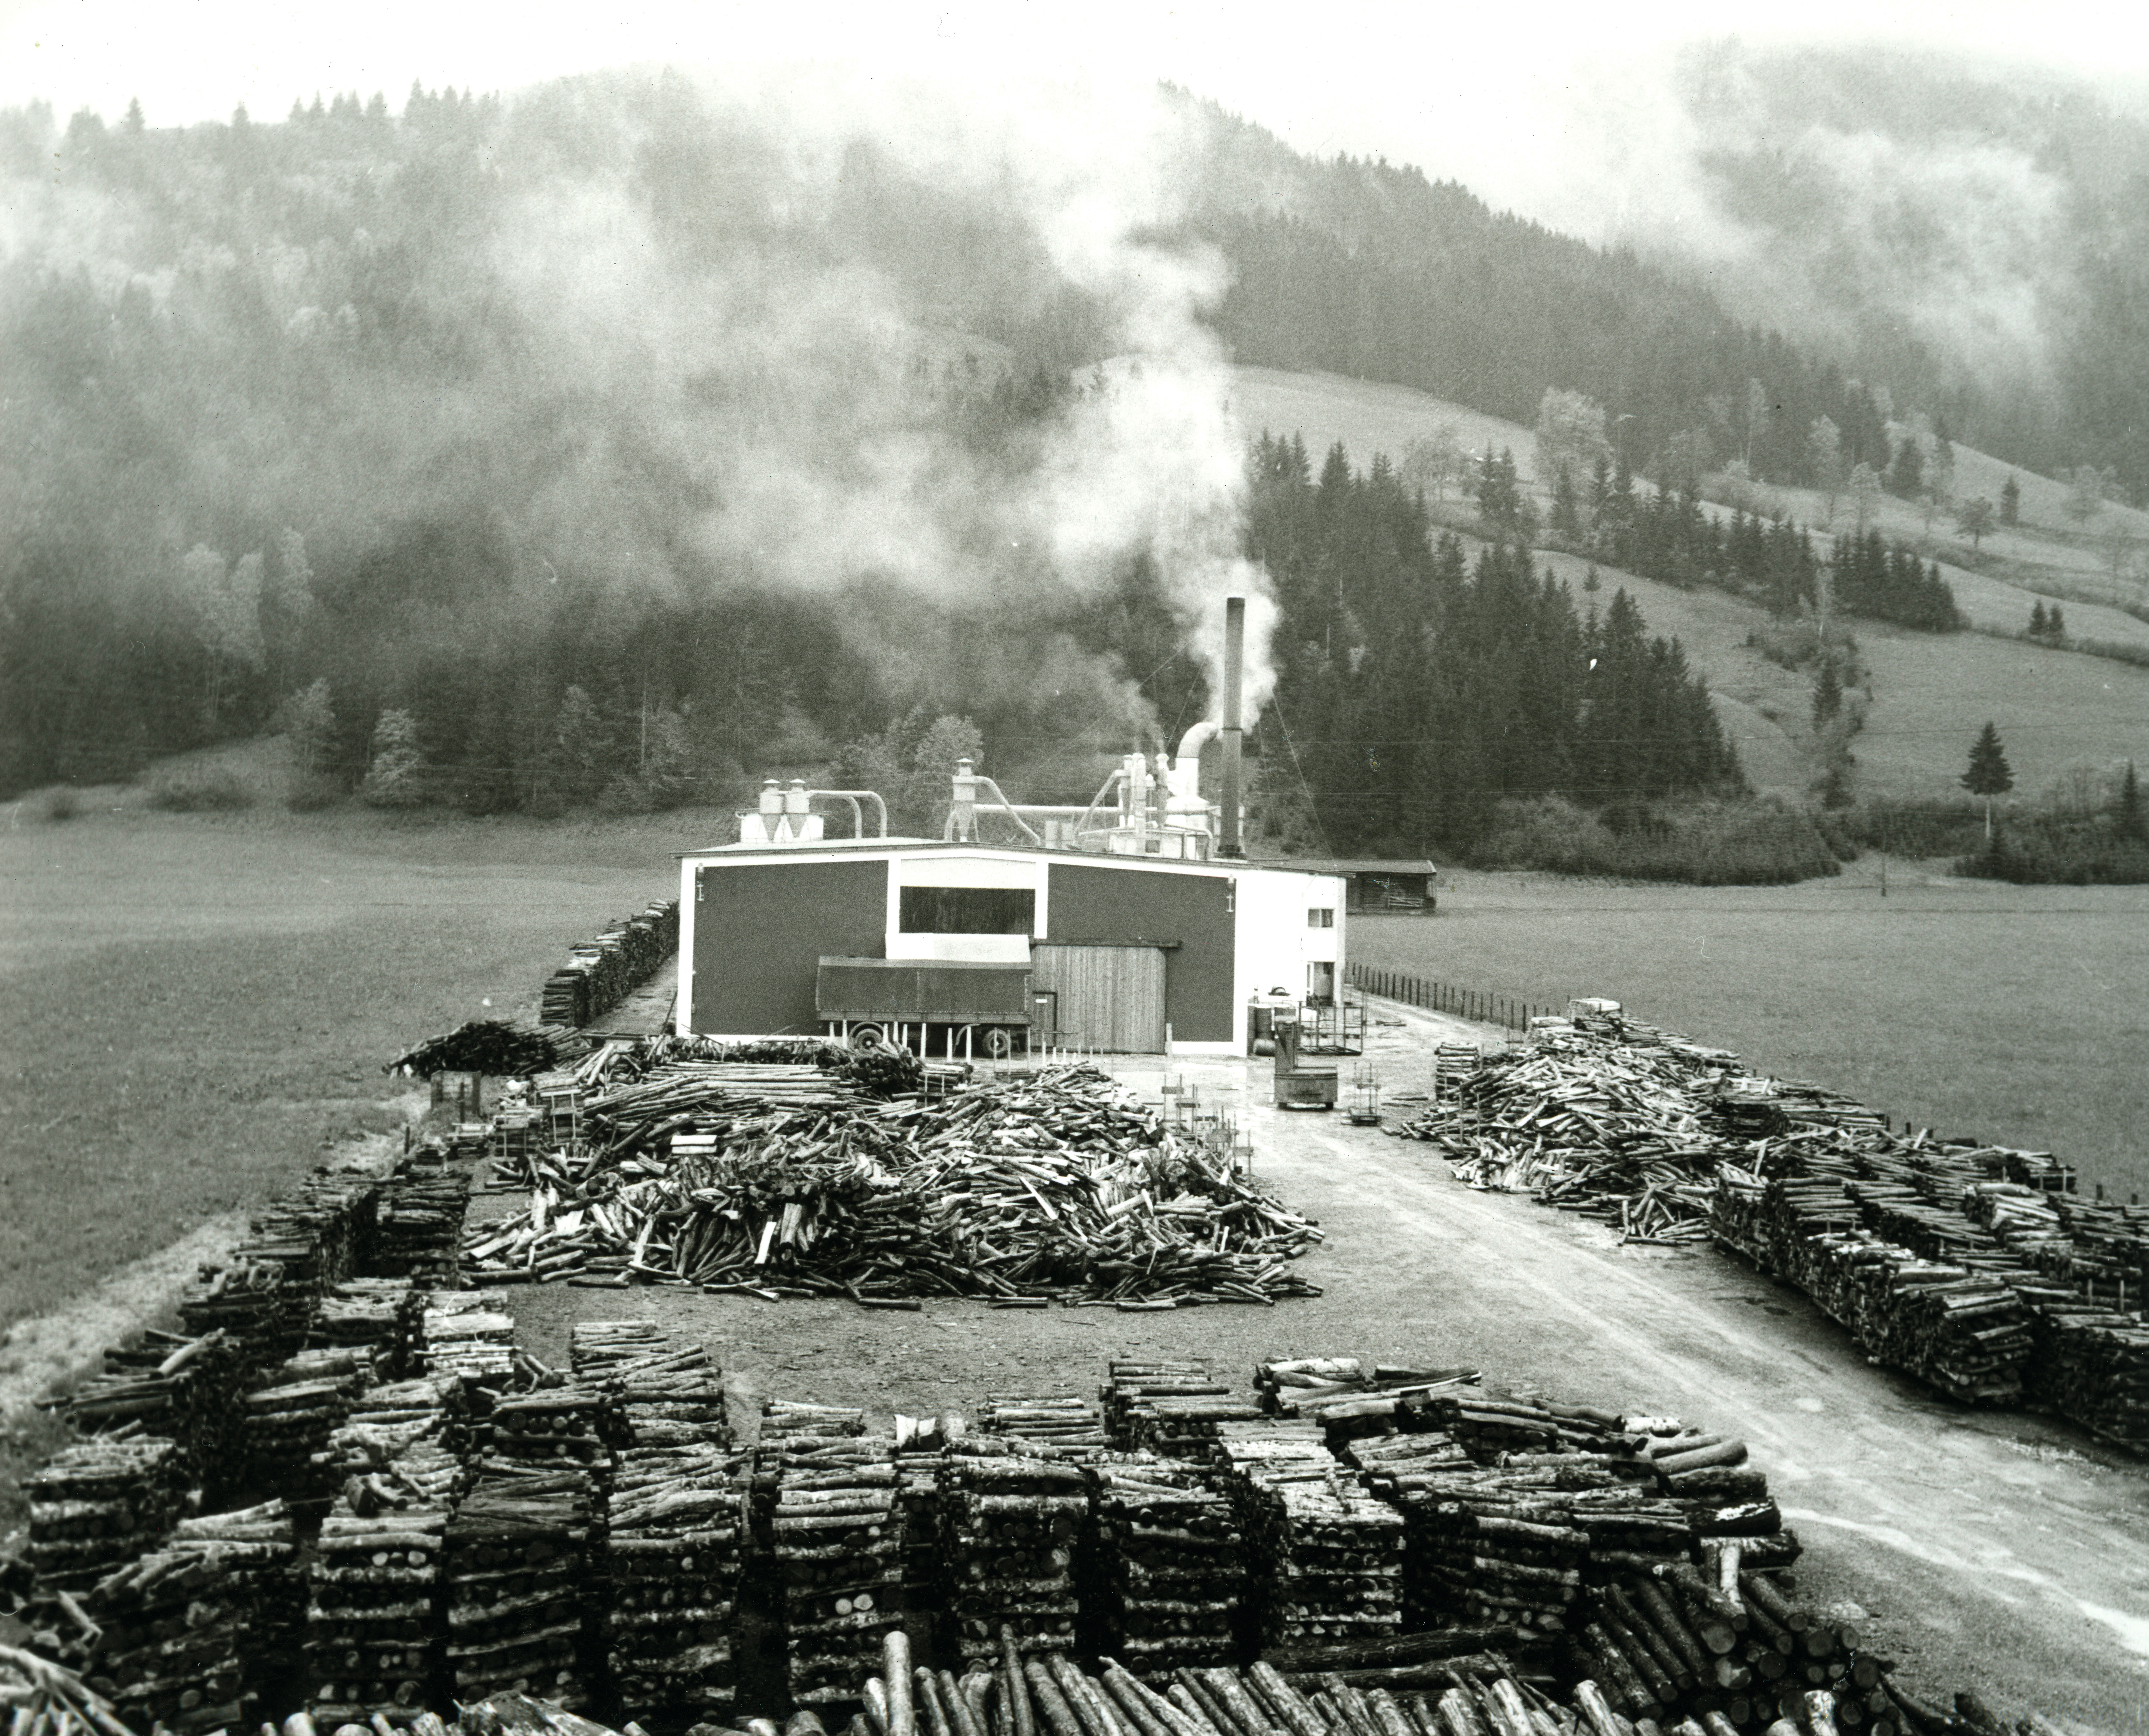 Le origini: il primo stabilimento di pannelli in truciolare EGGER a St. Johann in Tirol nel 1961.